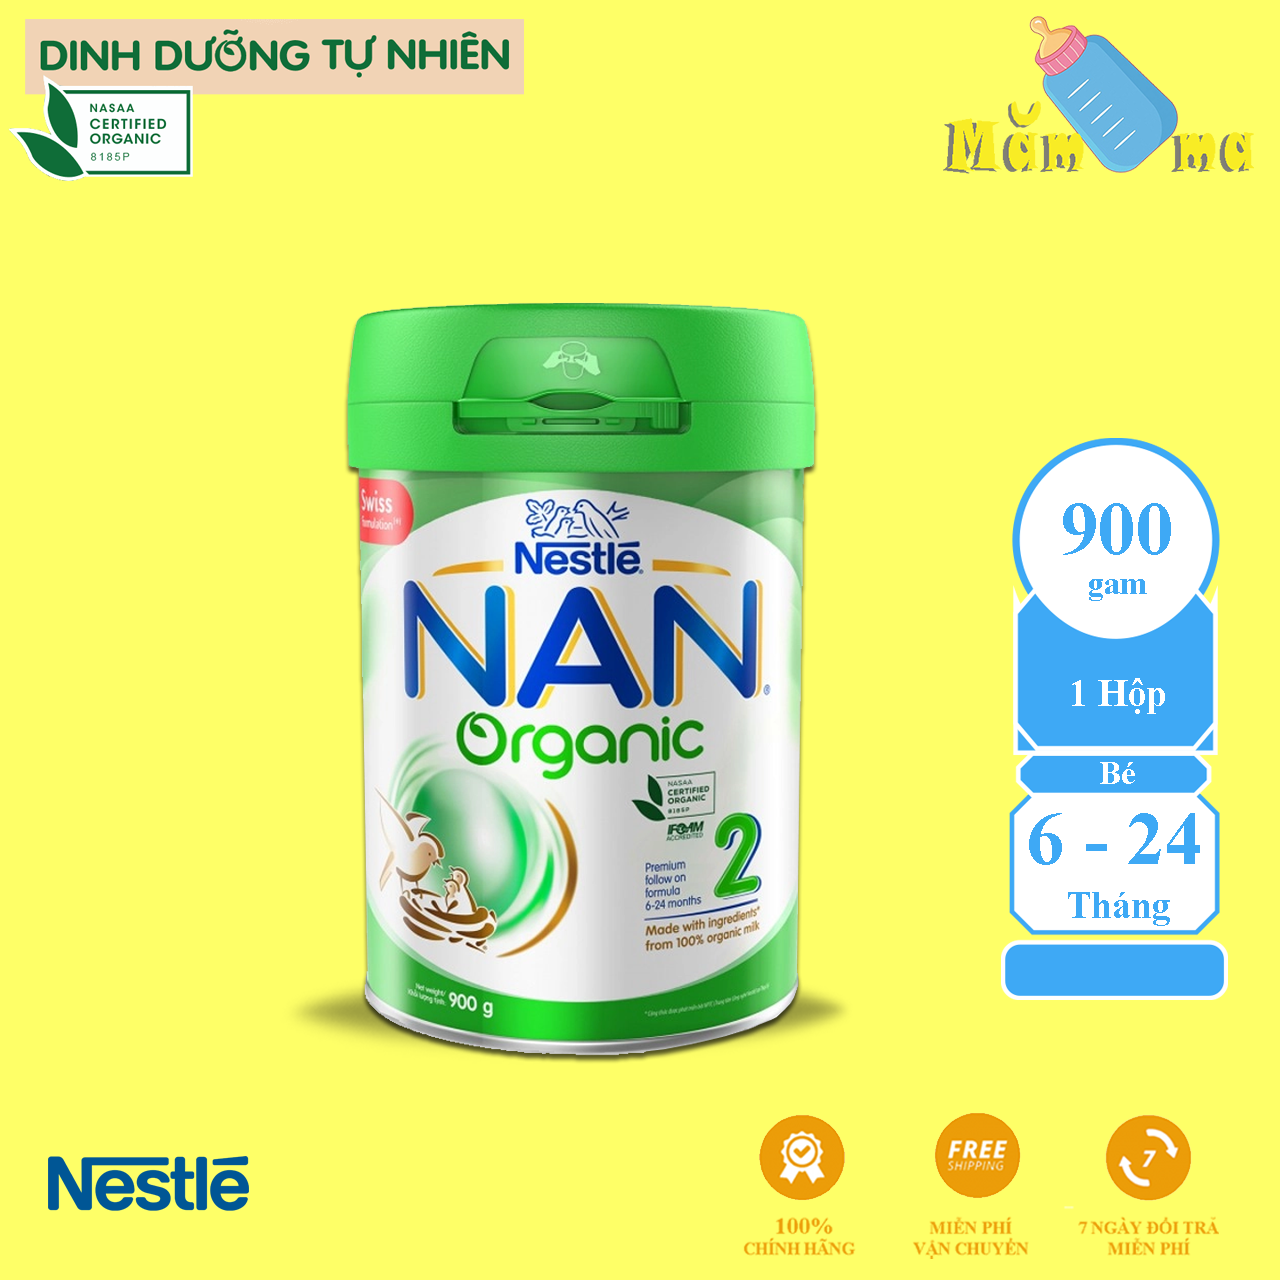 Sữa Bột NAN Organic số 2 cho trẻ từ 6 - 24 tháng tuổi